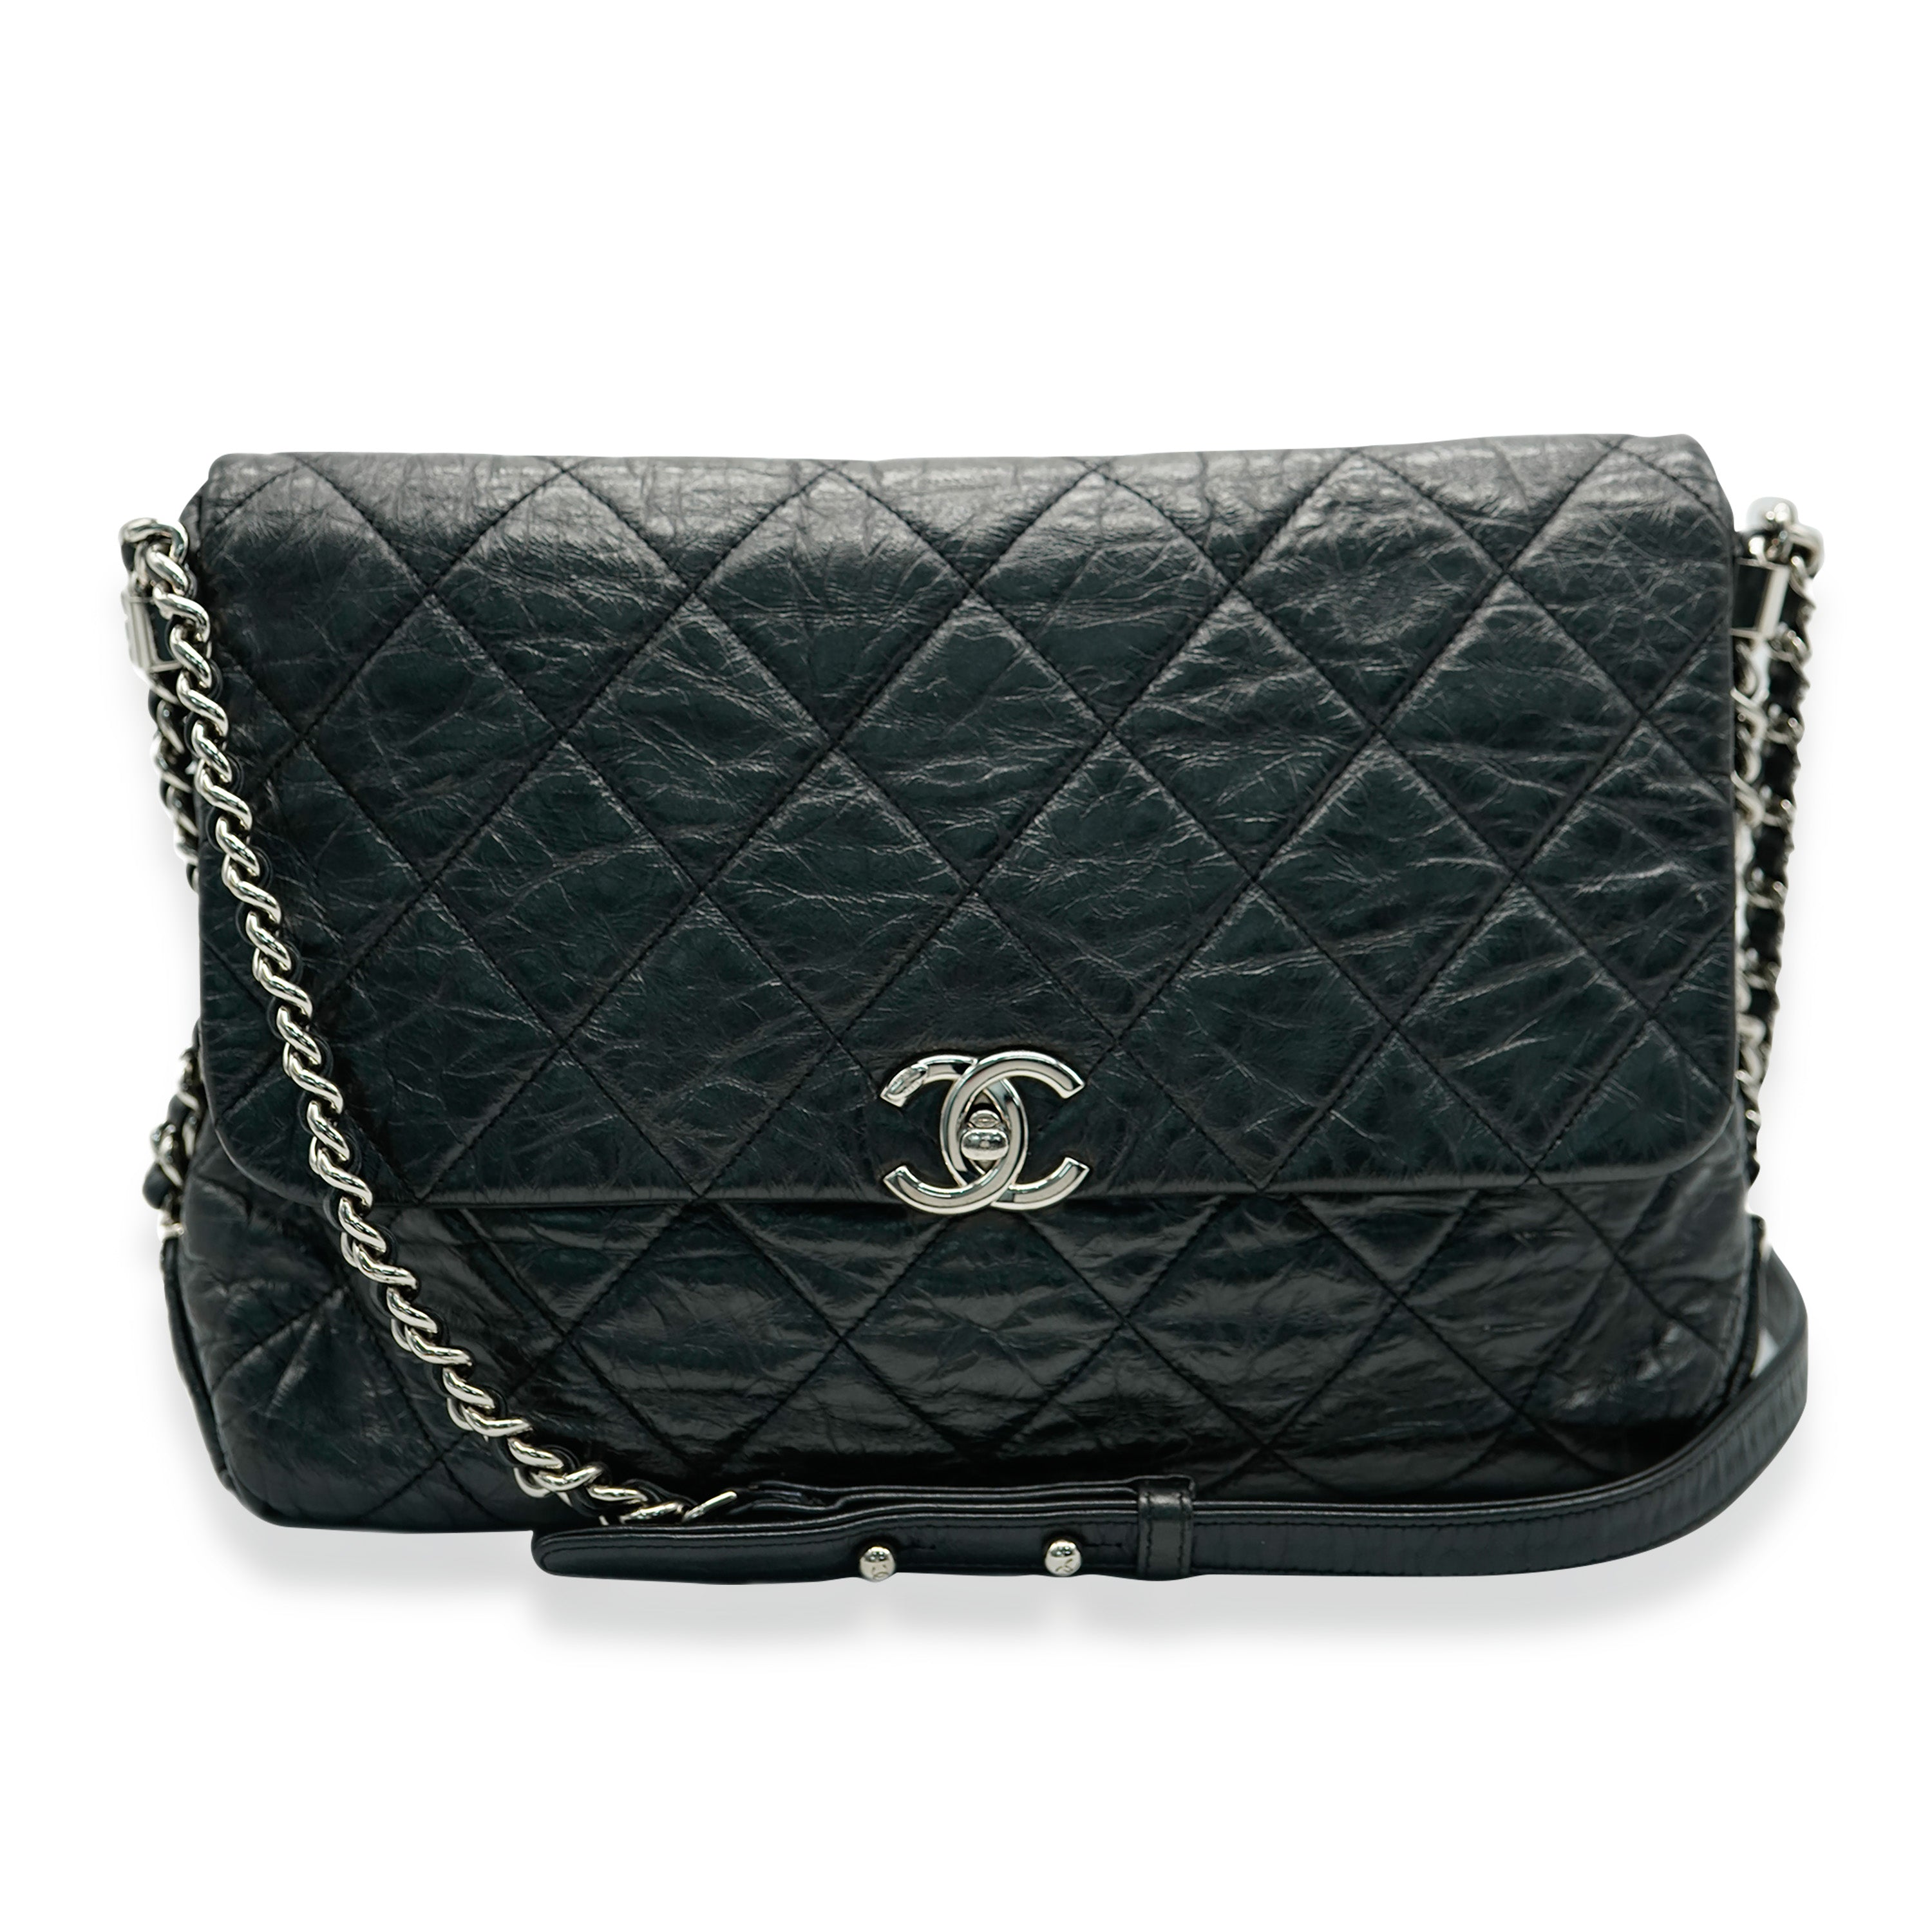 Chanel Black Crackled Aged Calfskin Big Bang Flap Bag